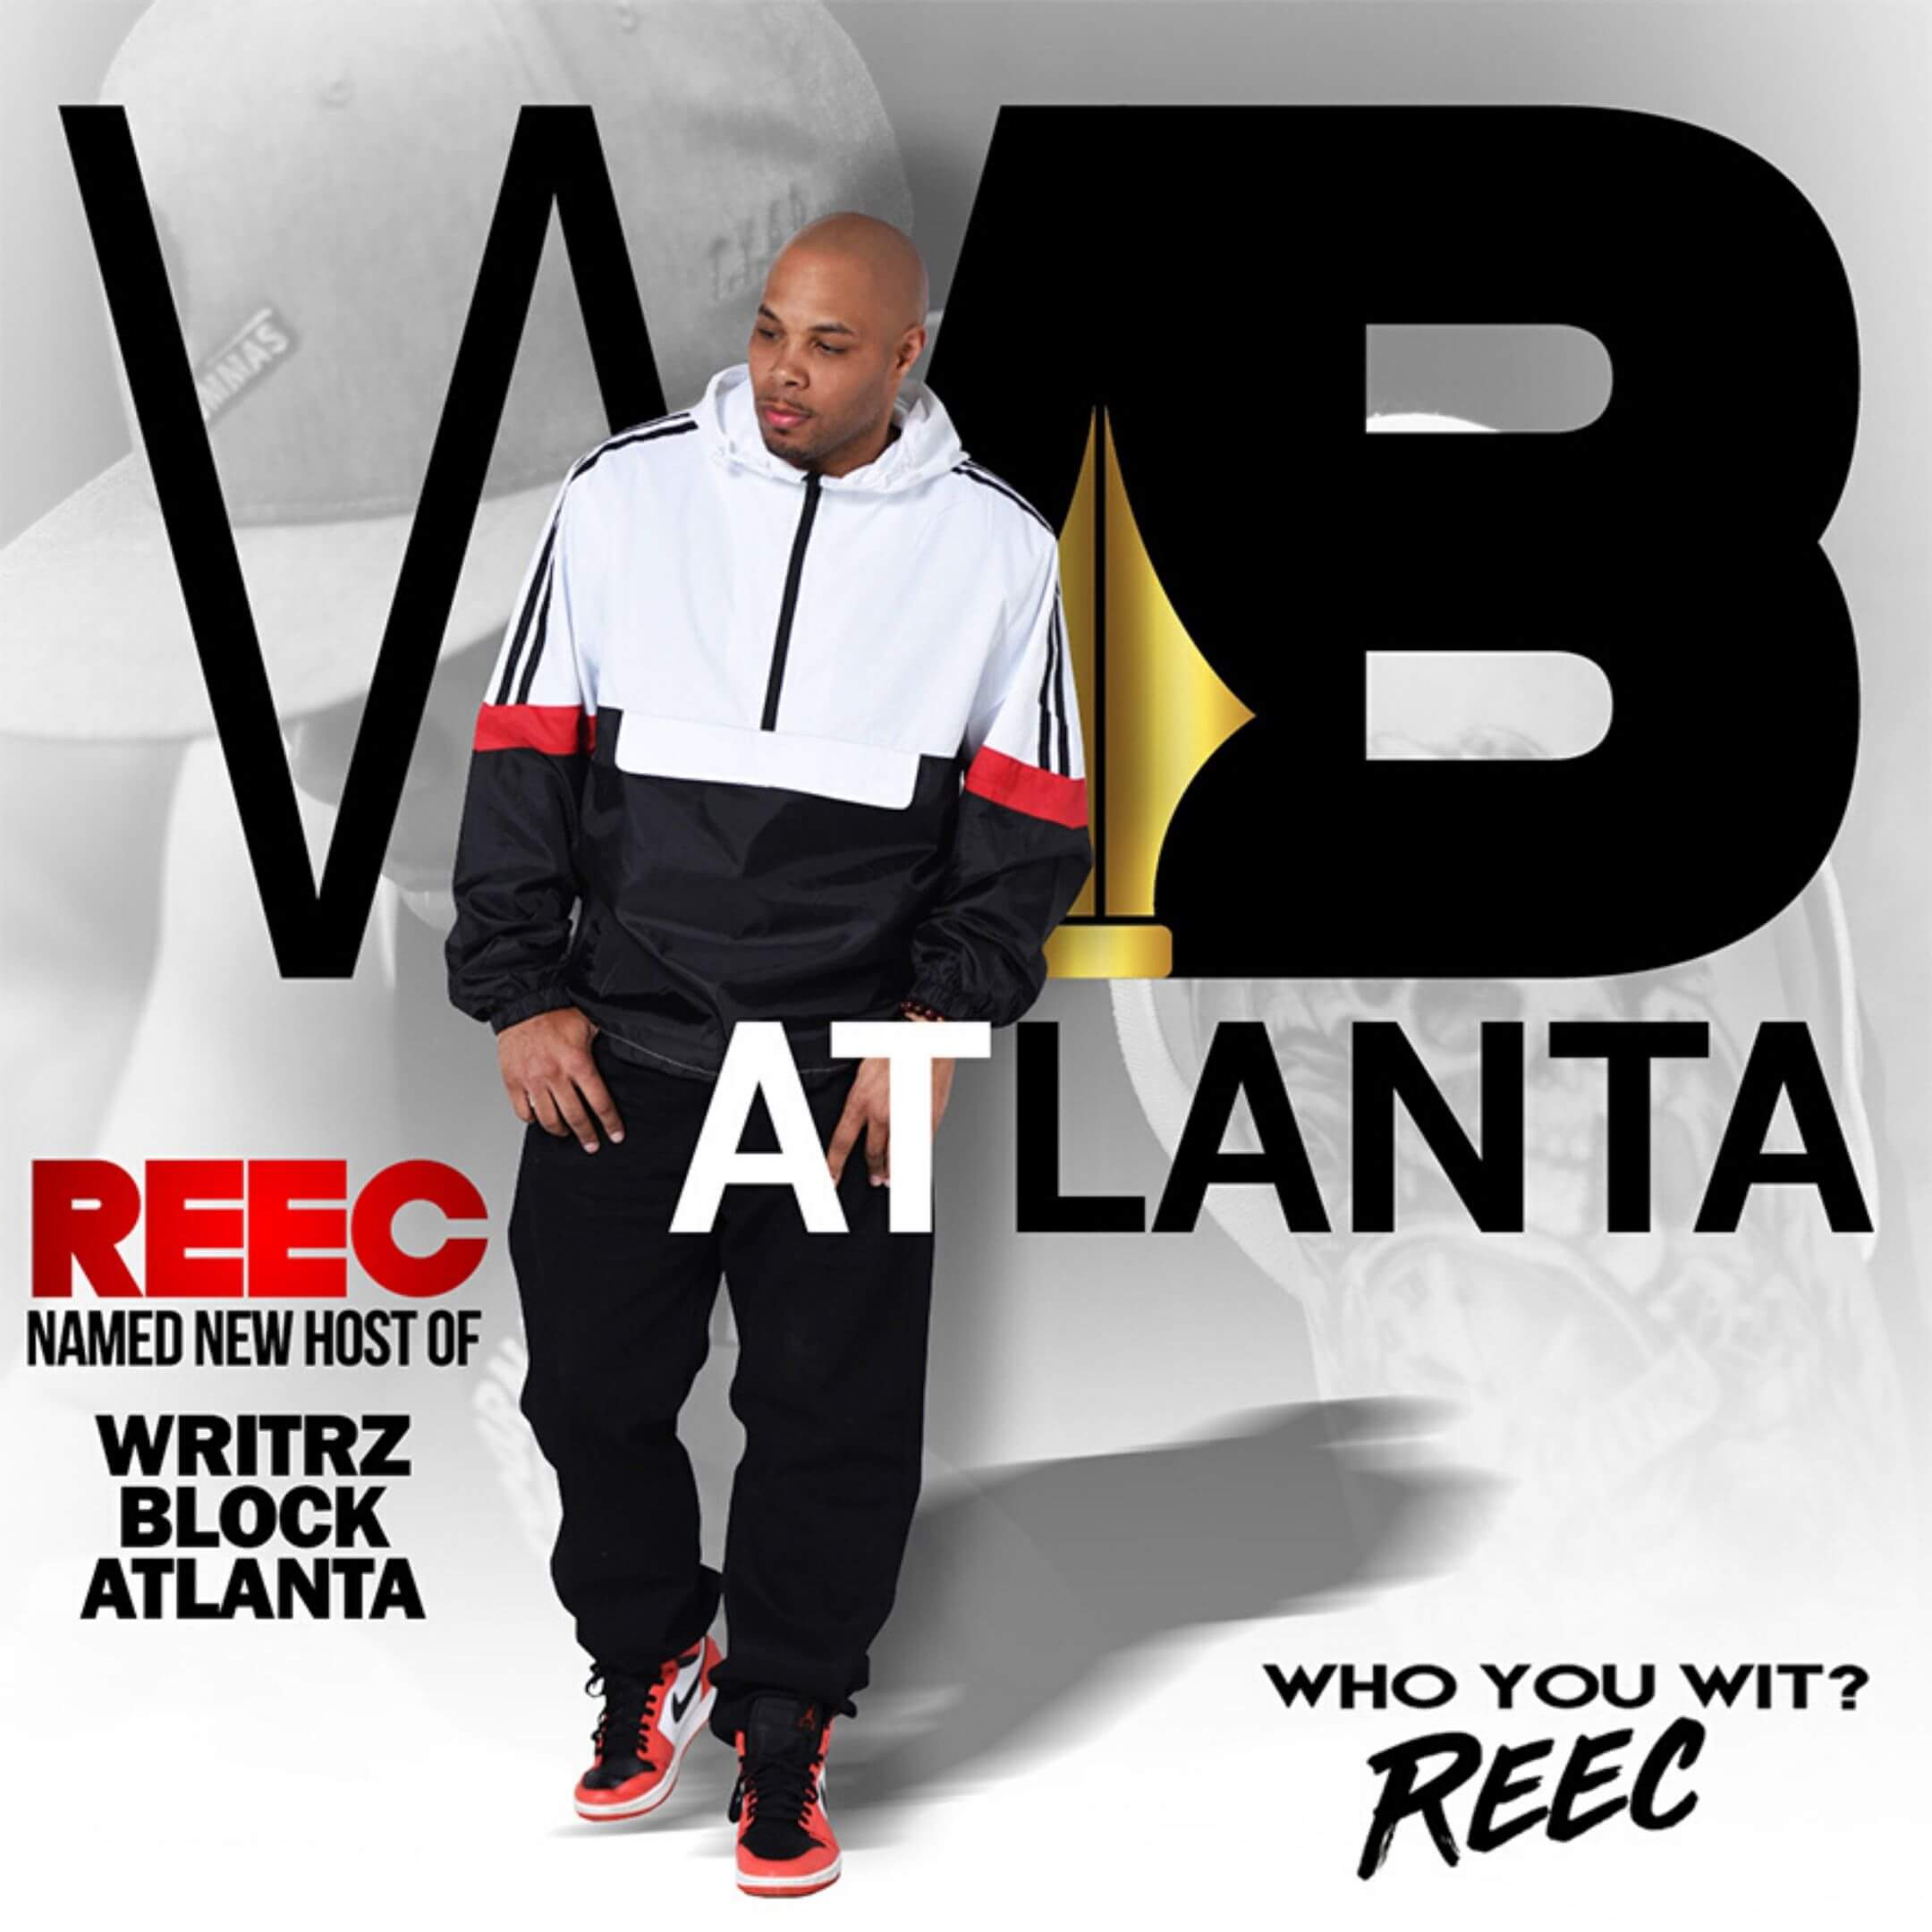 Reec Writrz Block web graphic